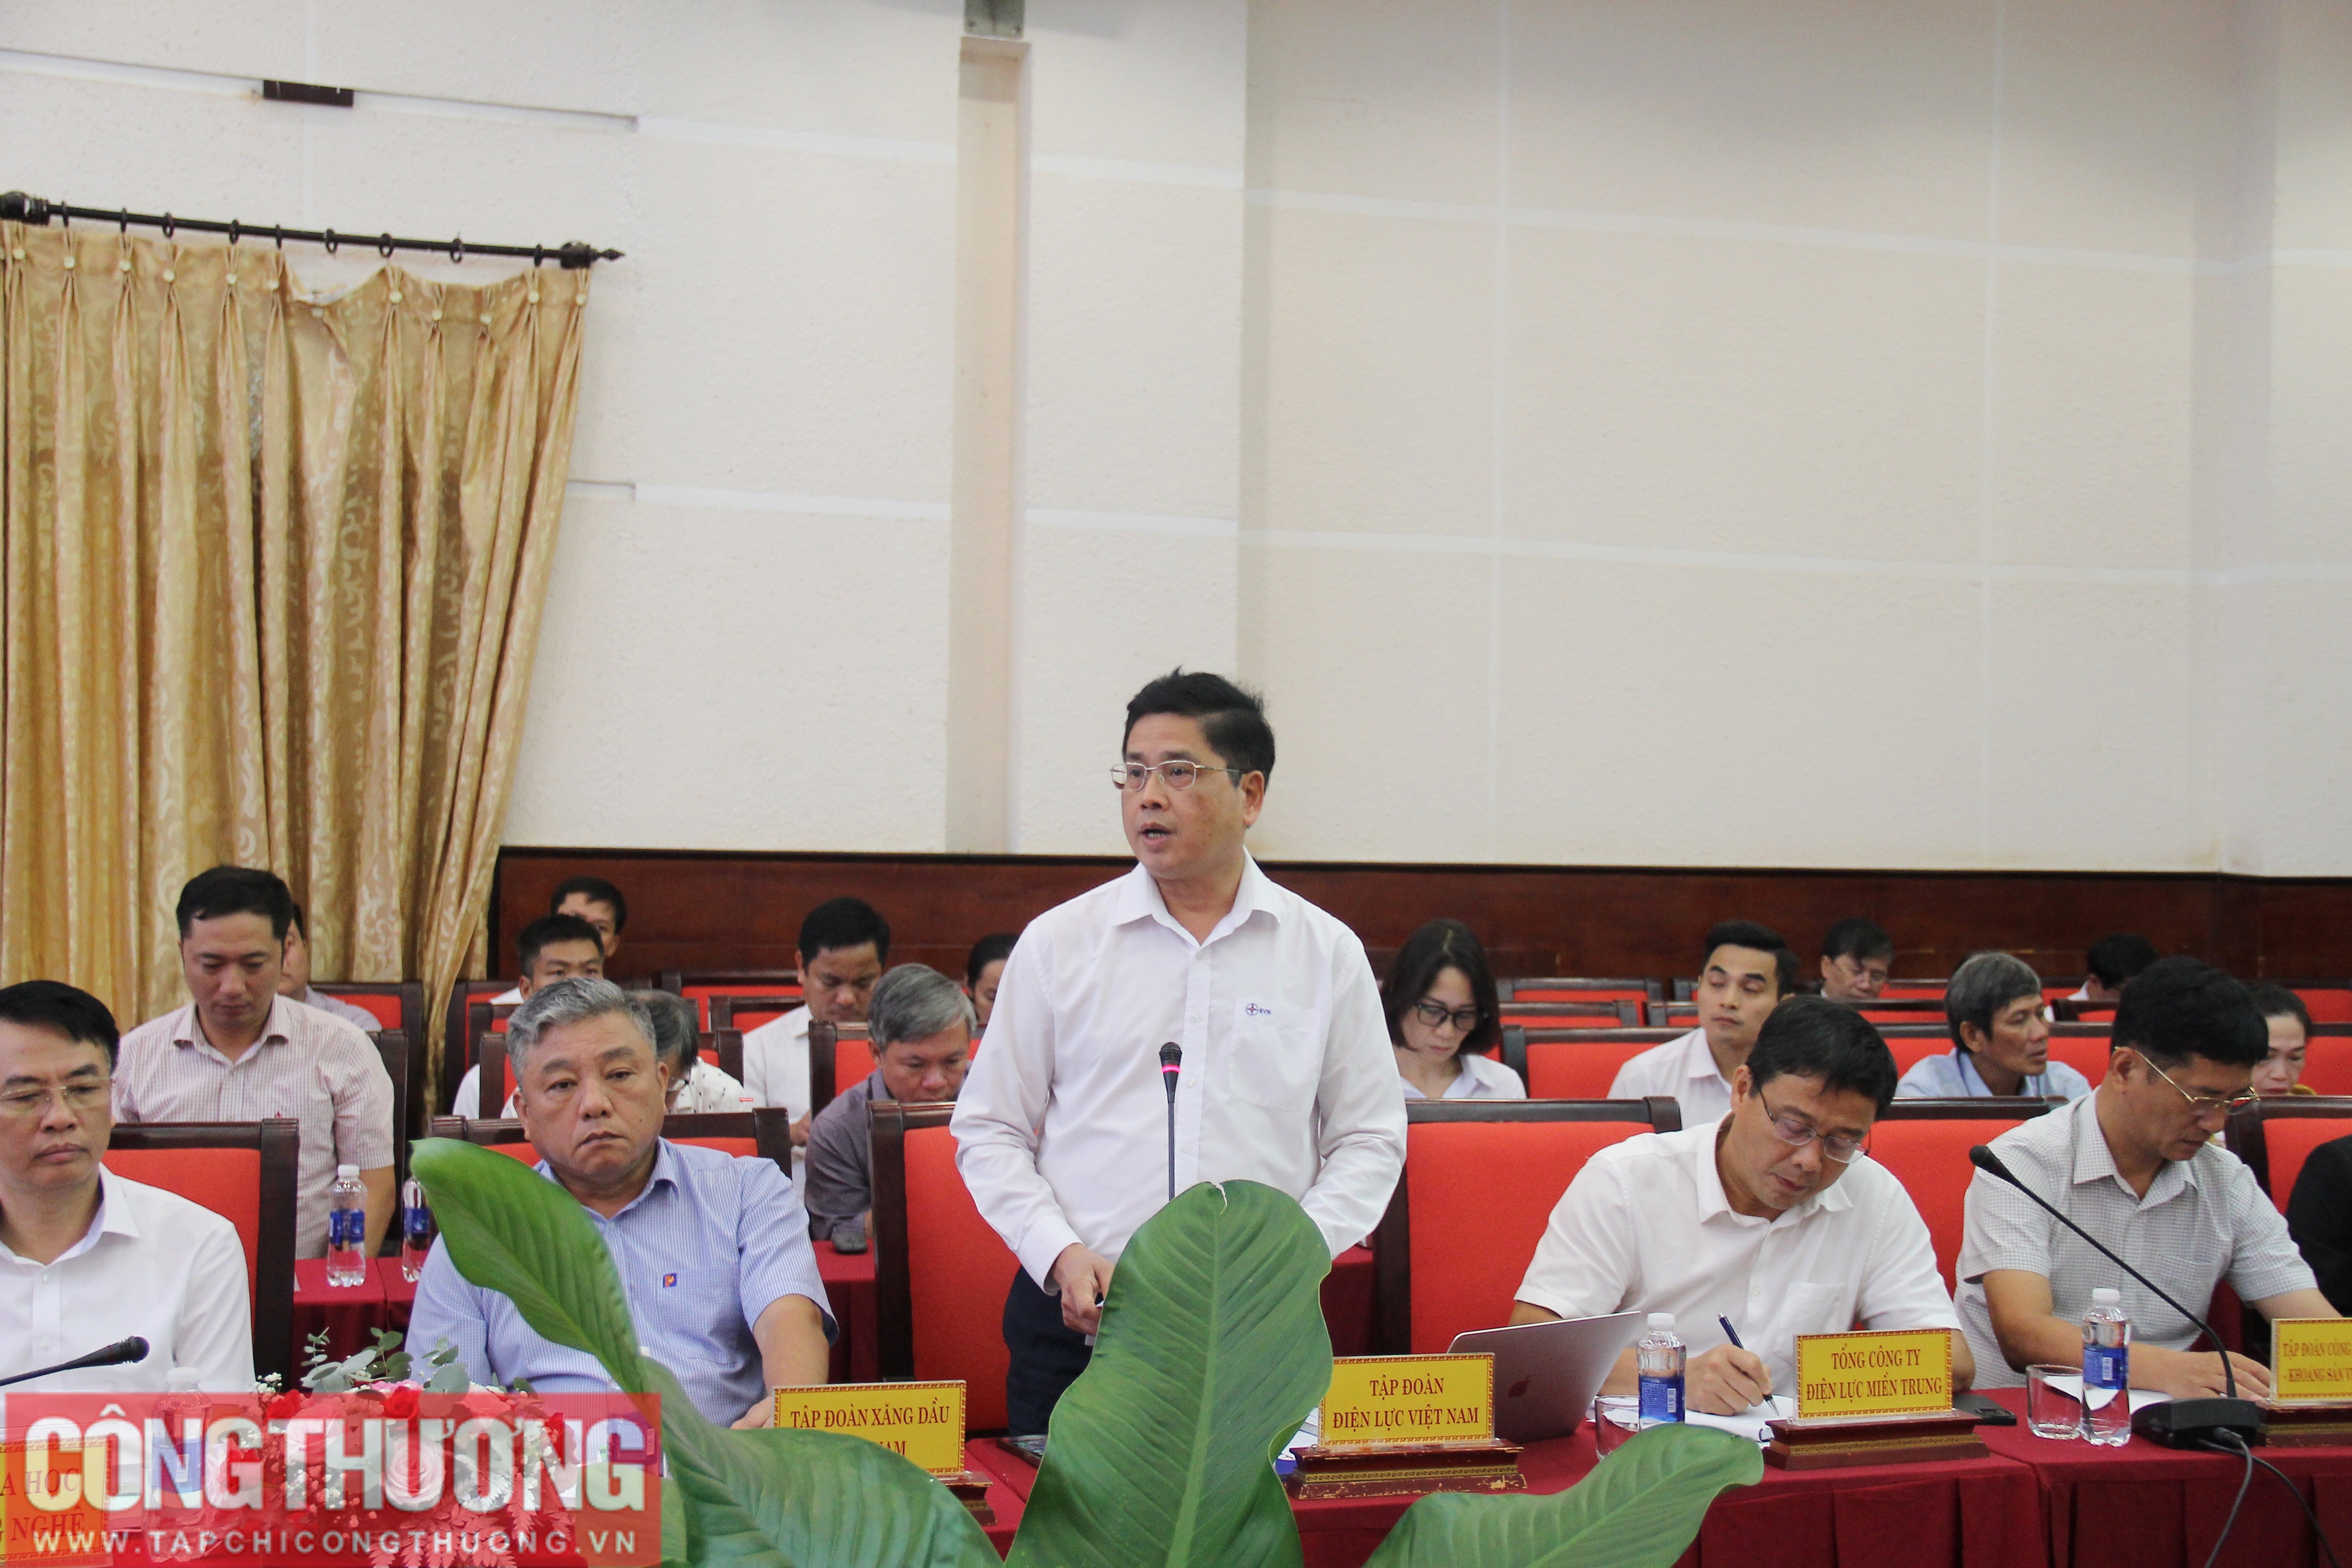 Ông Võ Quang Lâm, Phó Tổng giám đốc Tập đoàn Điện lực Việt Nam đề xuất những giải pháp cụ thể, thực chất để tháo gỡ khó khăn cho các địa phương